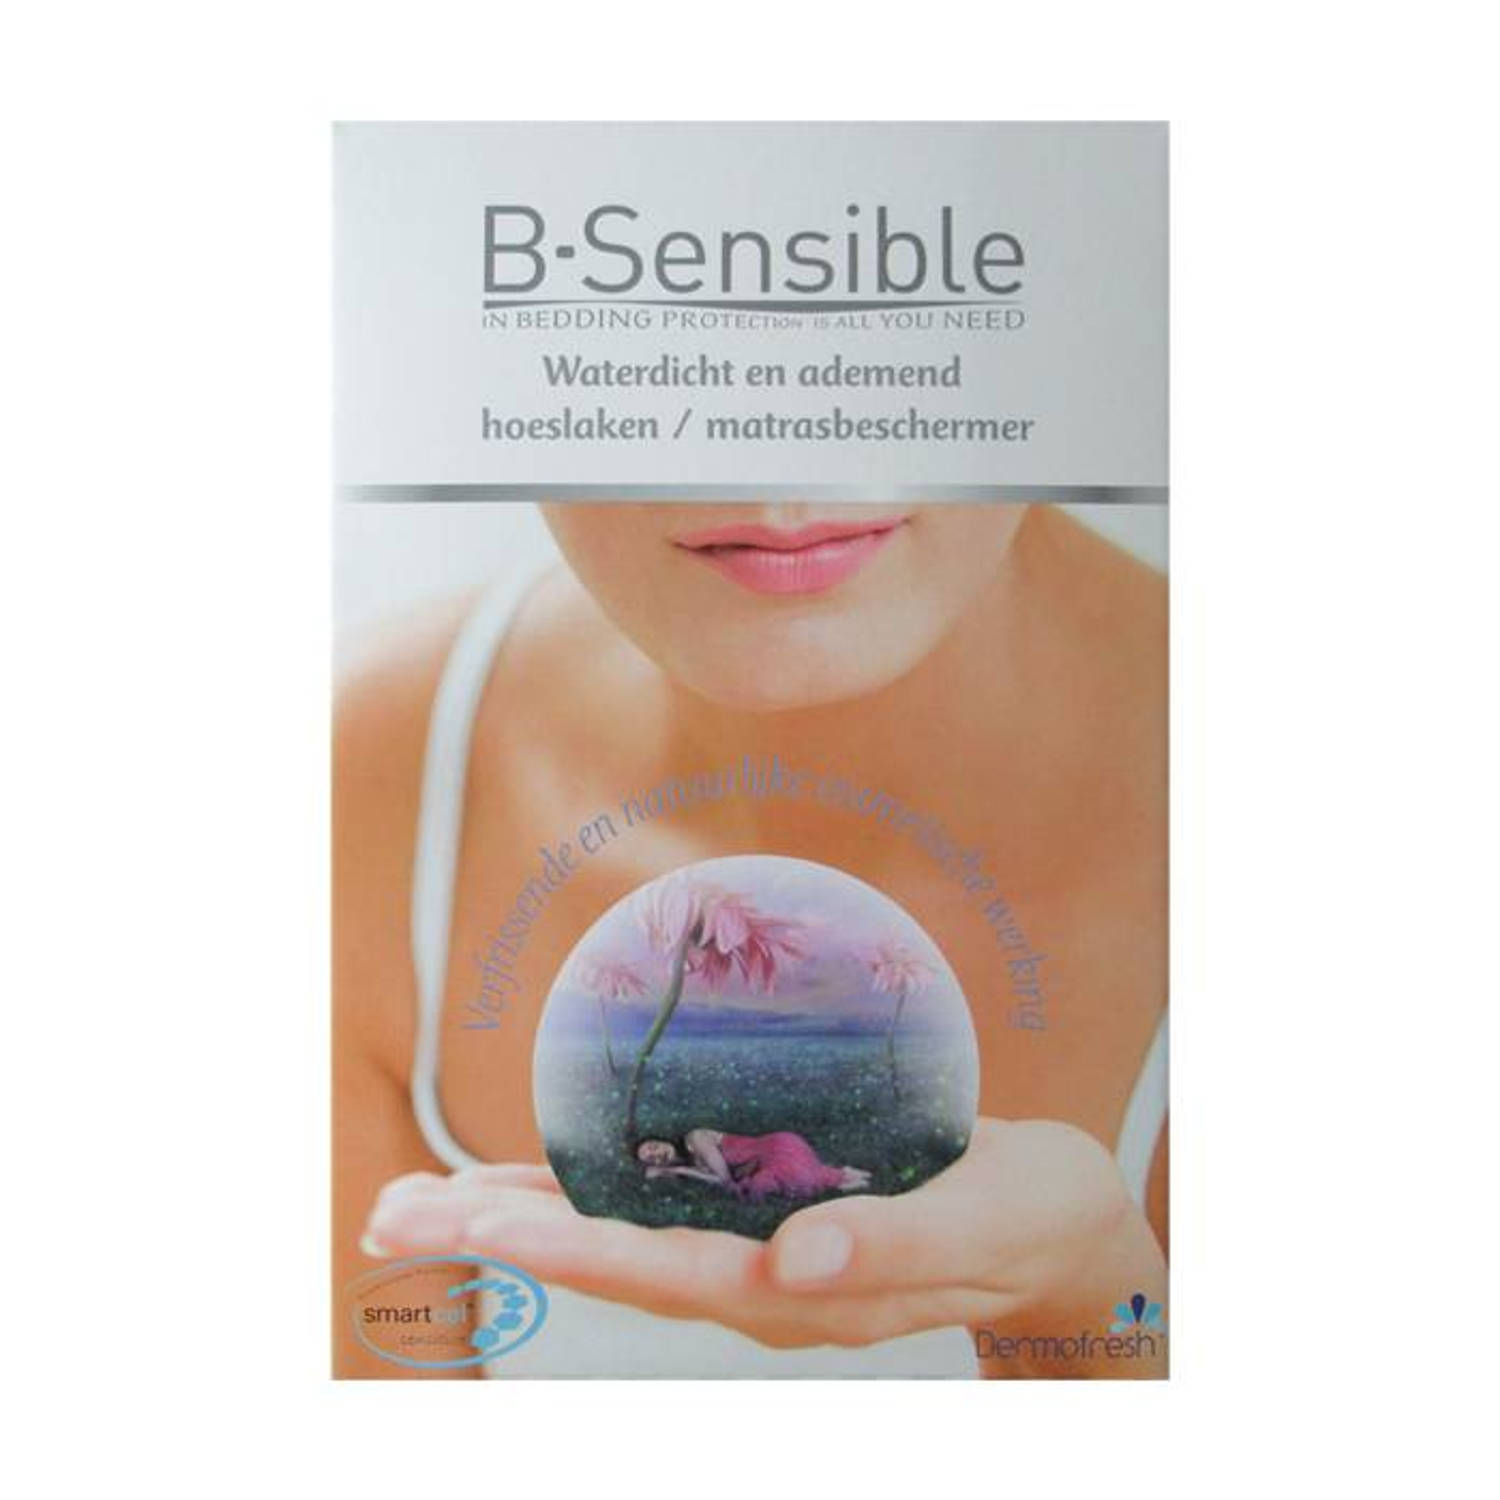 B-sensible 2 In 1 Waterdicht & Ademend Hoeslaken + Matrasbeschermer Wit 100x200